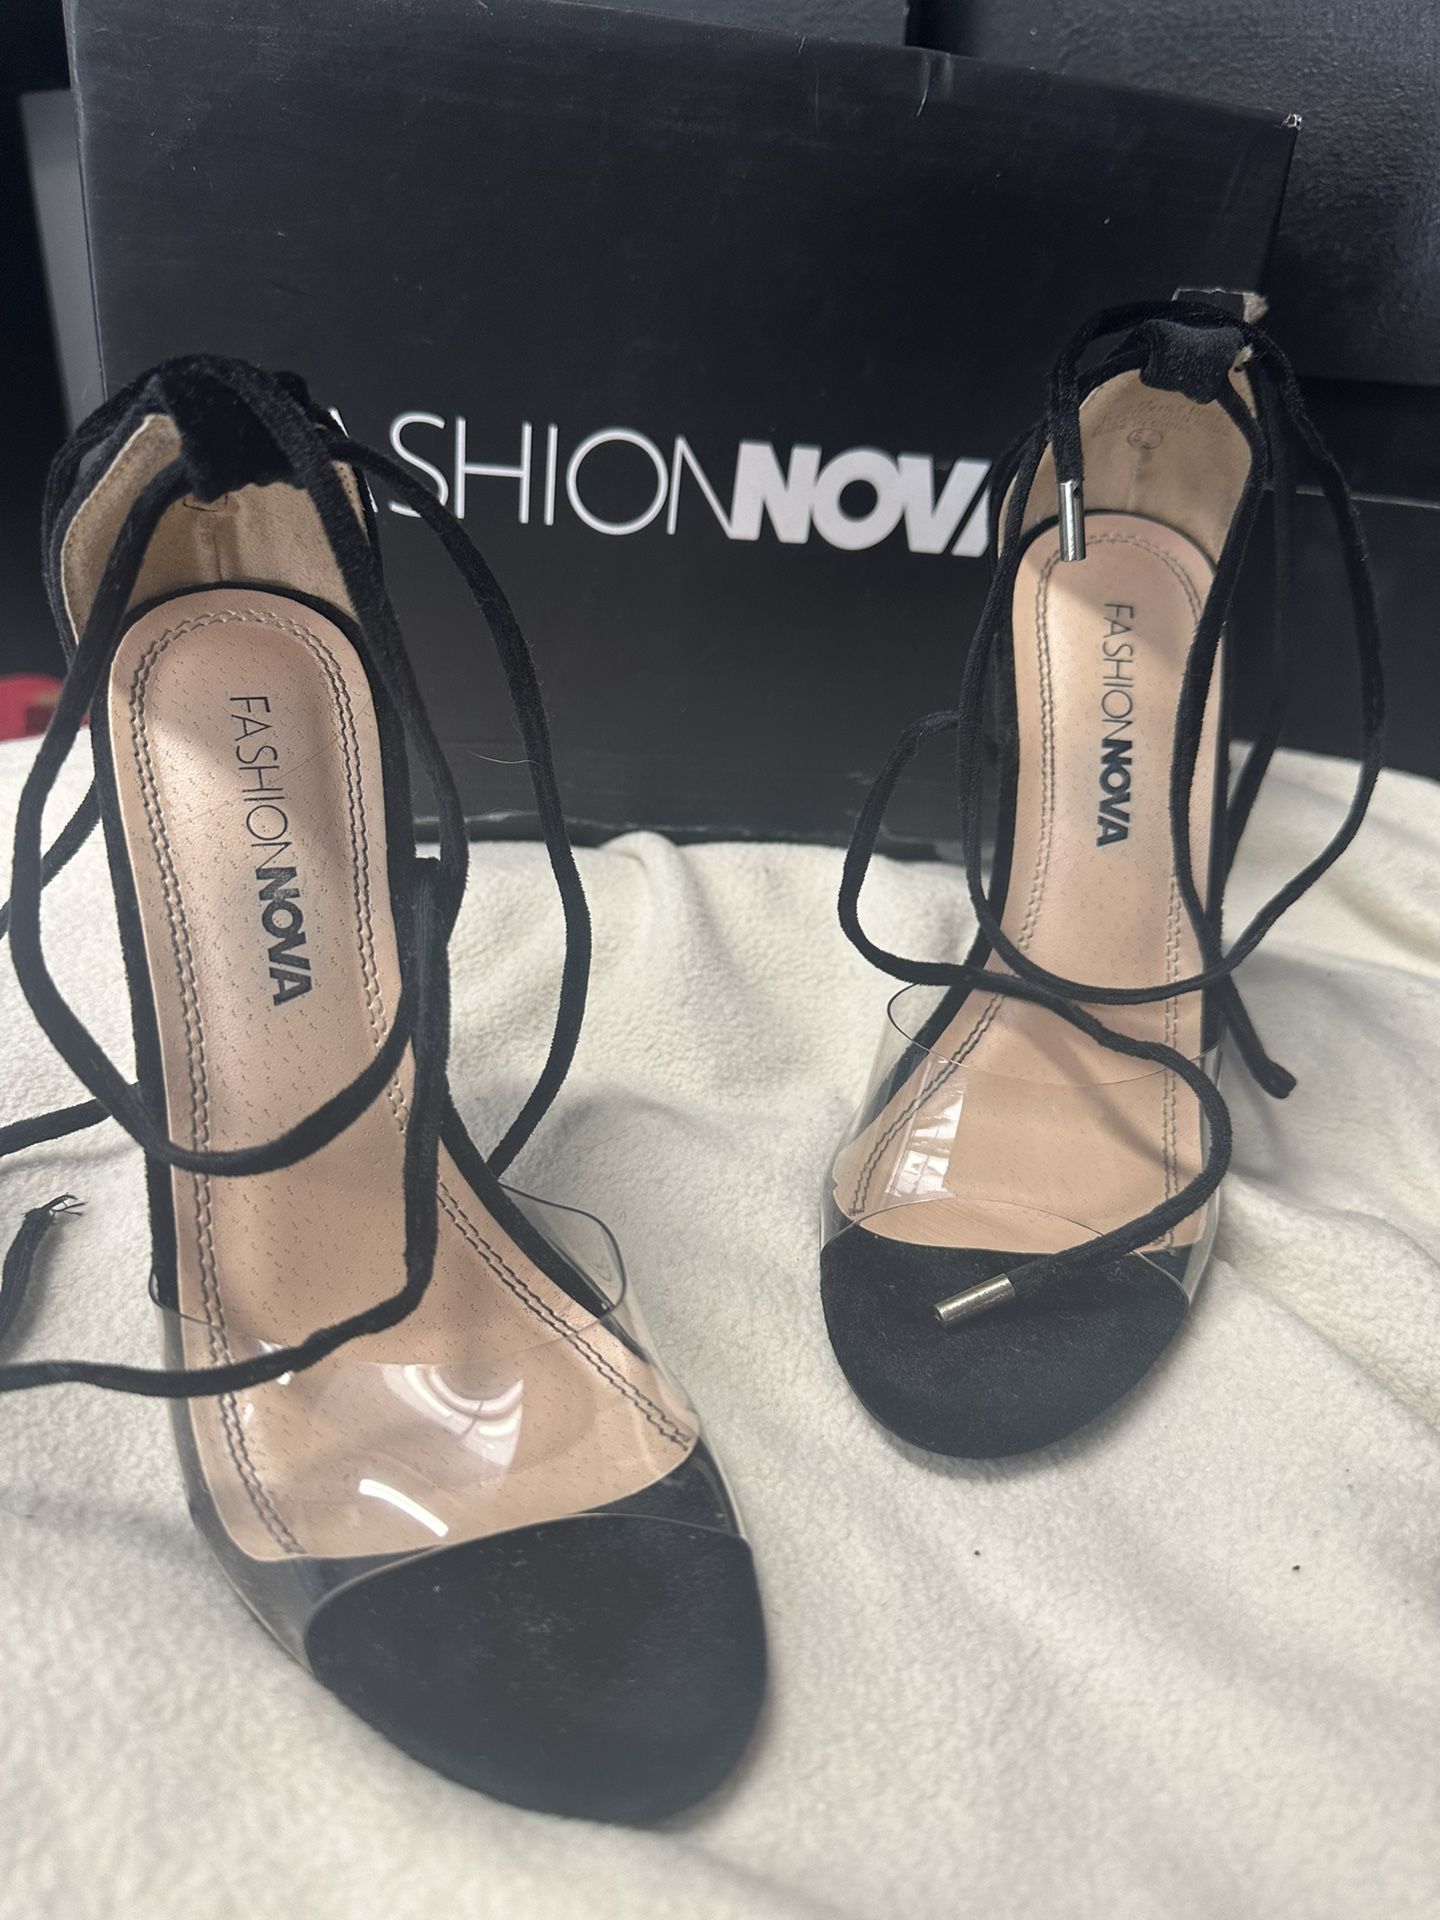 Fashion Nova Heels